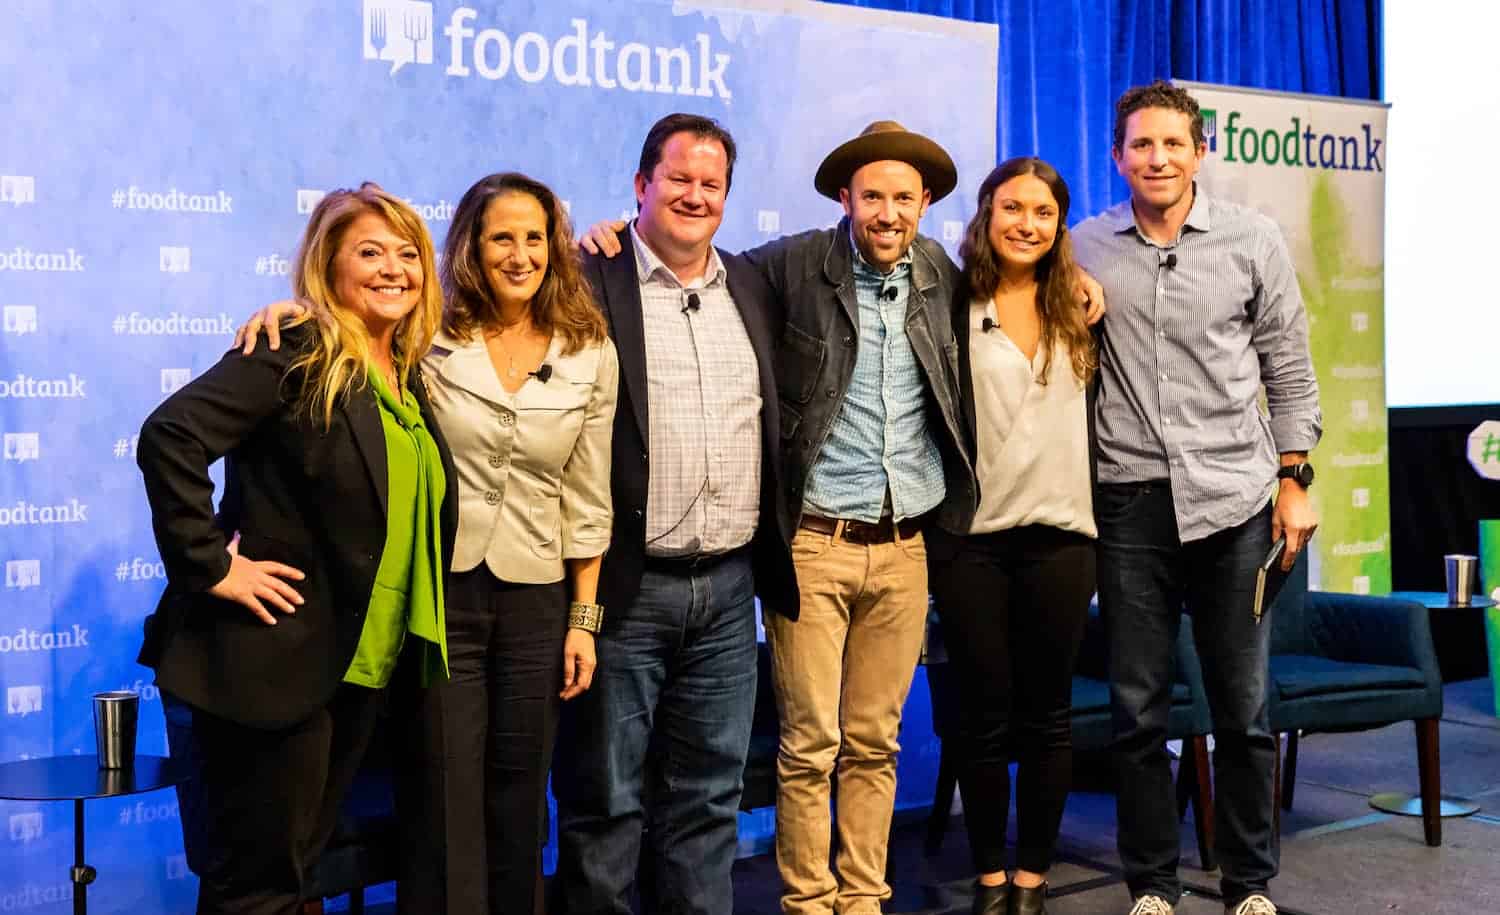 在2018年圣地亚哥食品罐峰会上,专家们走上w88优德老虎机平台舞台,讨论科技如何推进可持续的食物系统。